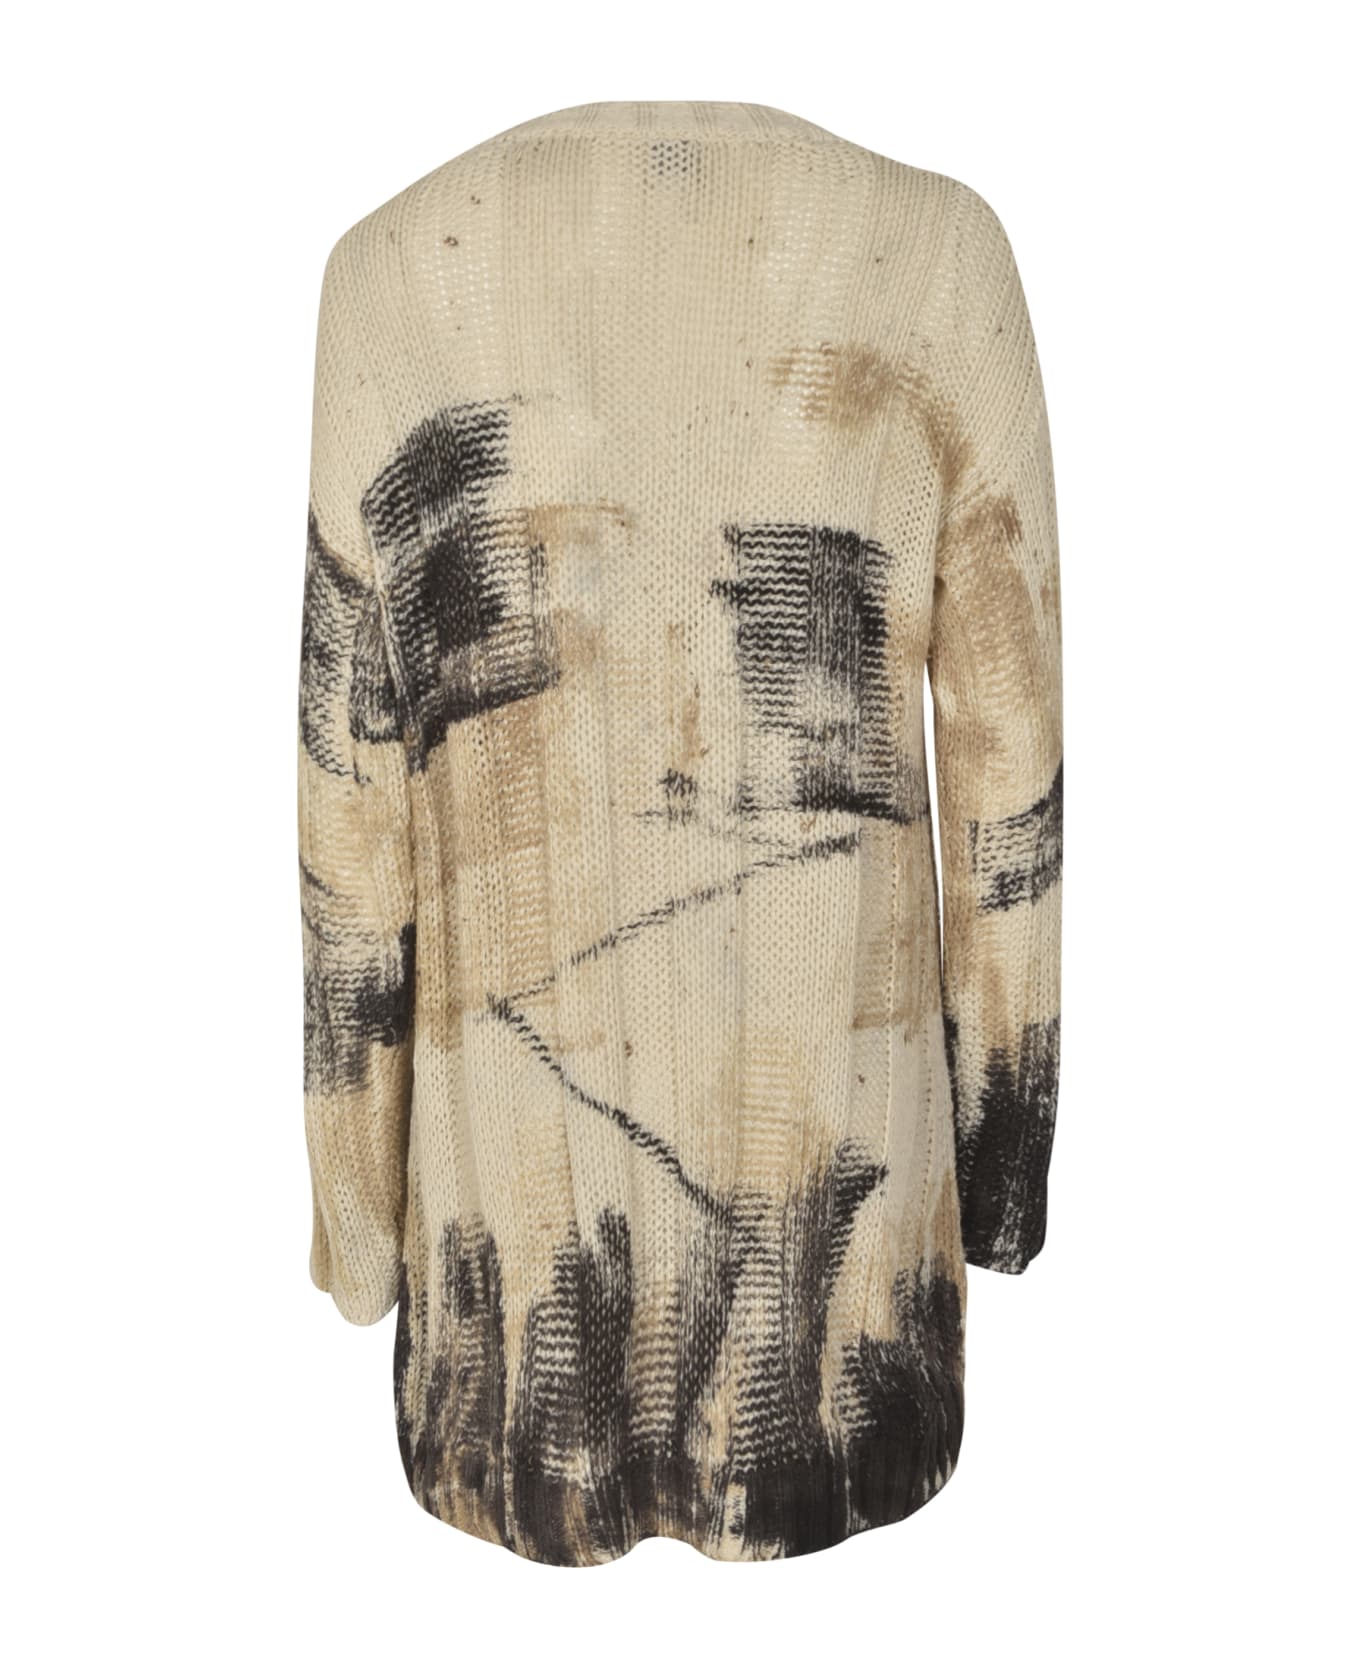 f cashmere Acciuga Sweater - ivory/Beige/Black